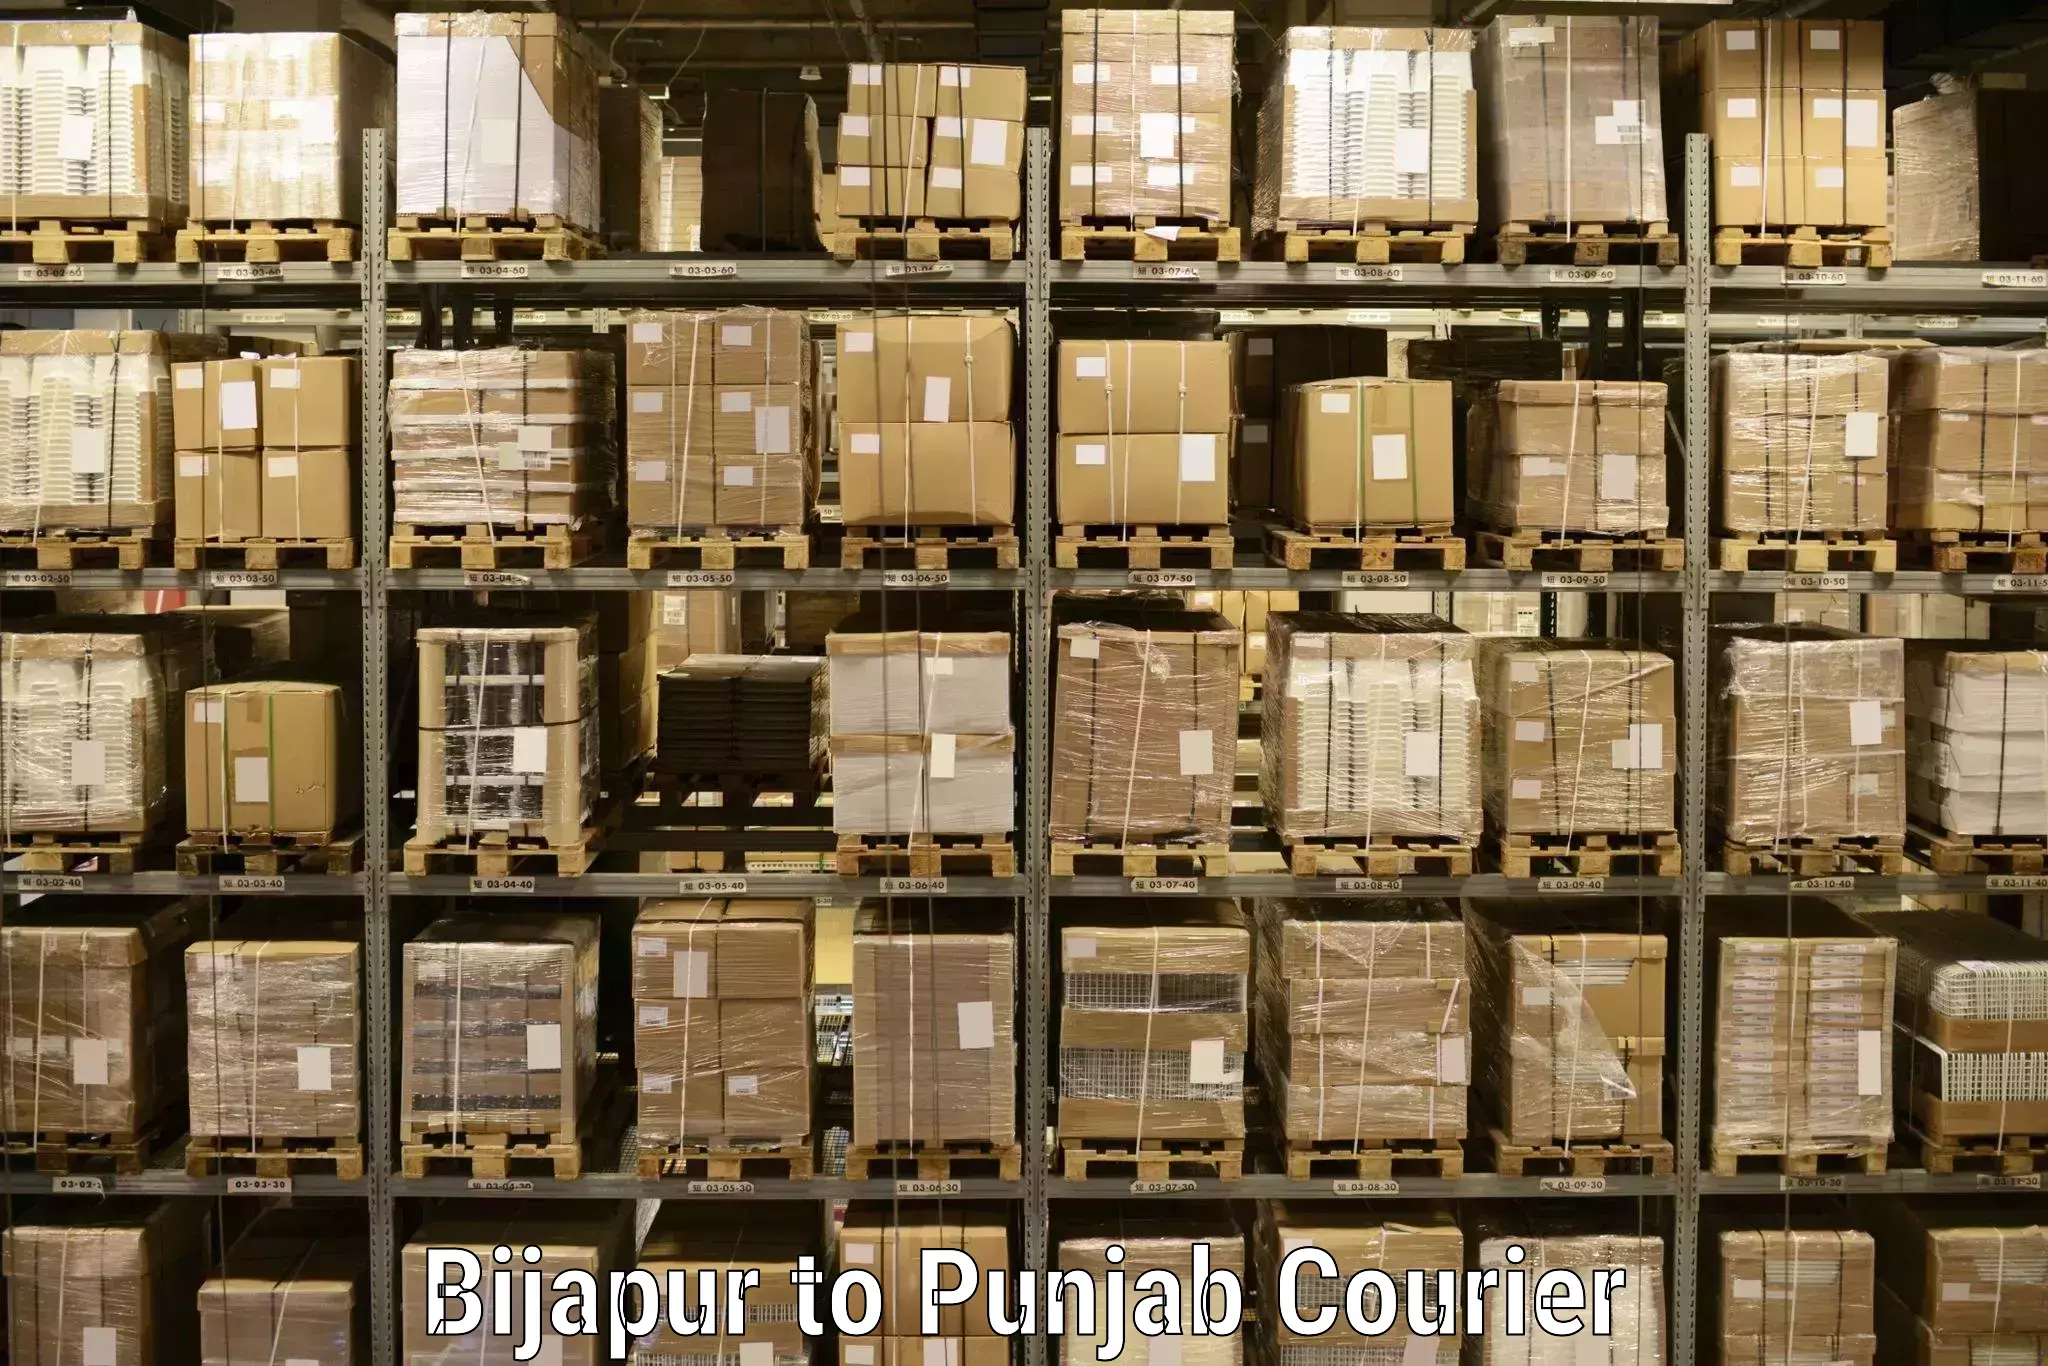 Next-generation courier services Bijapur to Dera Bassi